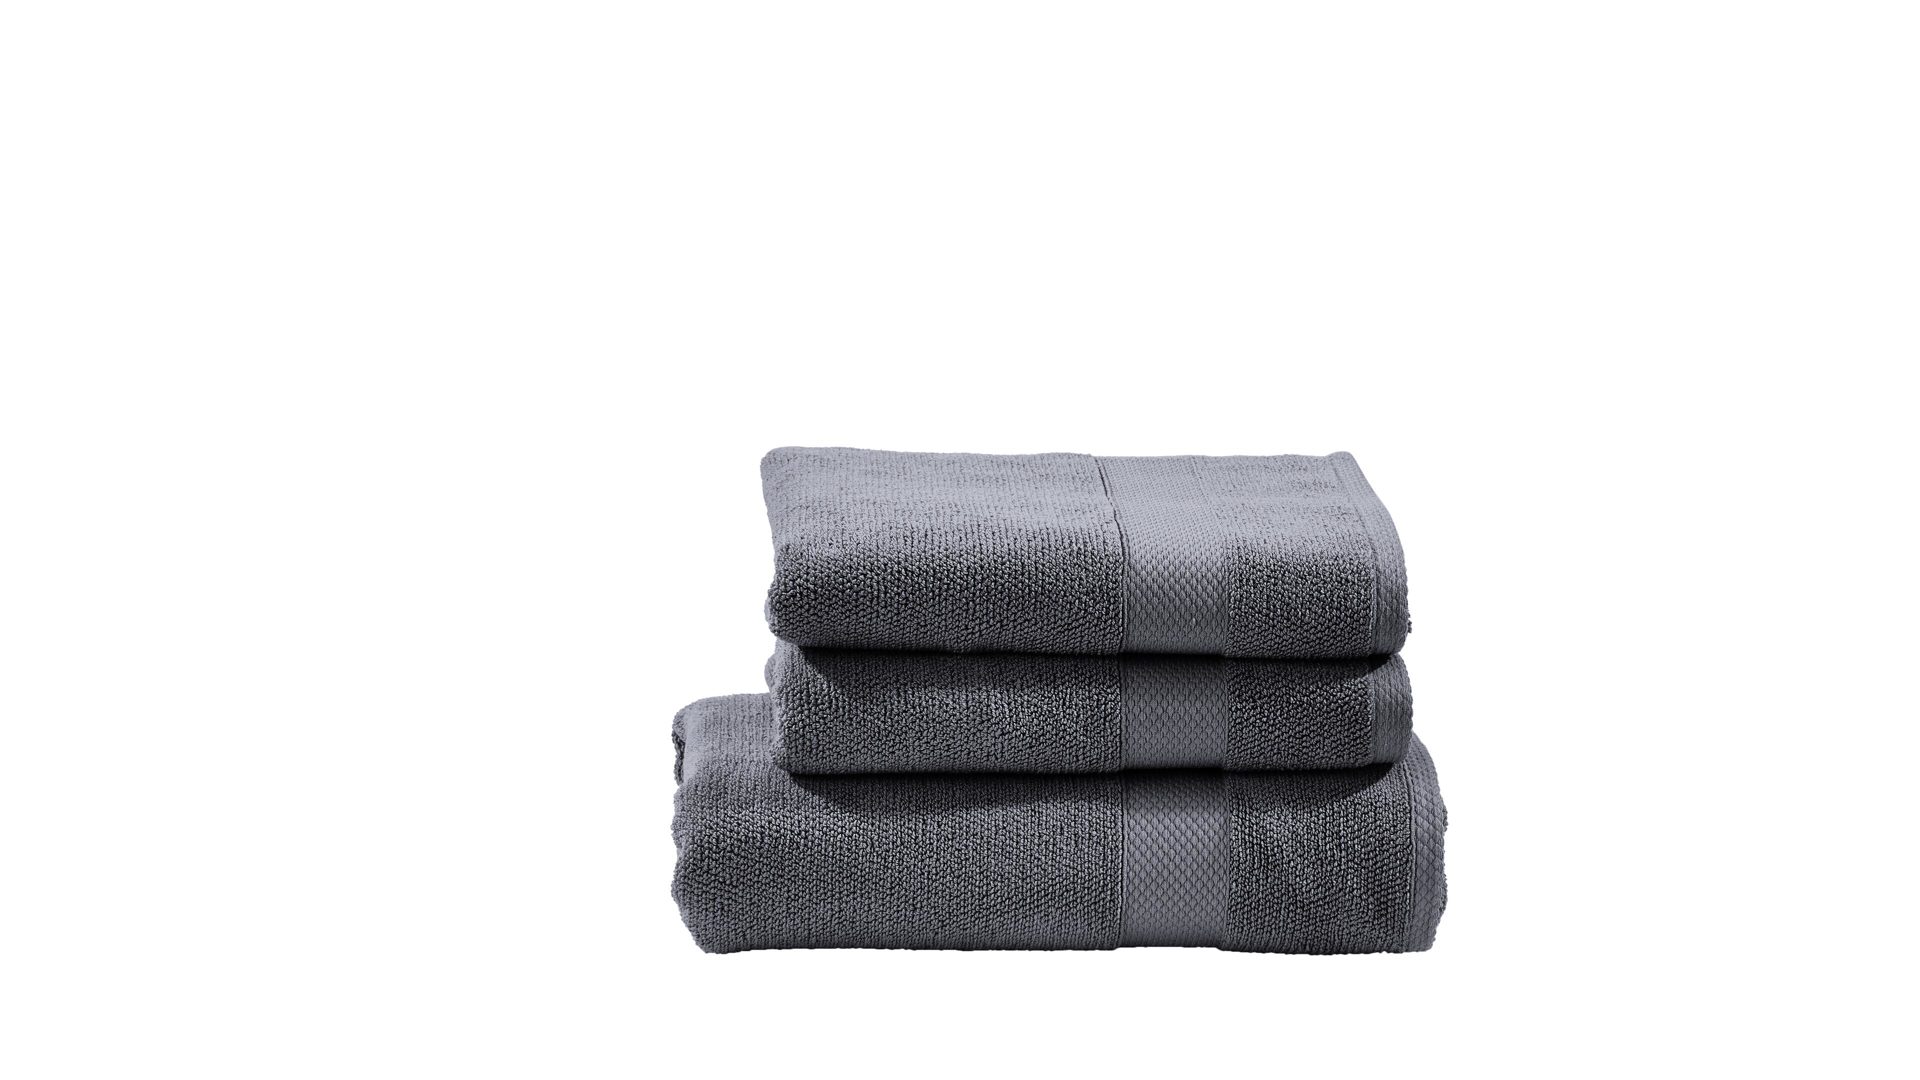 Handtuch-Set Done.® be different aus Stoff in Anthrazit DONE.® Handtuch-Set Deluxe anthrazitfarbene Baumwolle  – dreiteilig